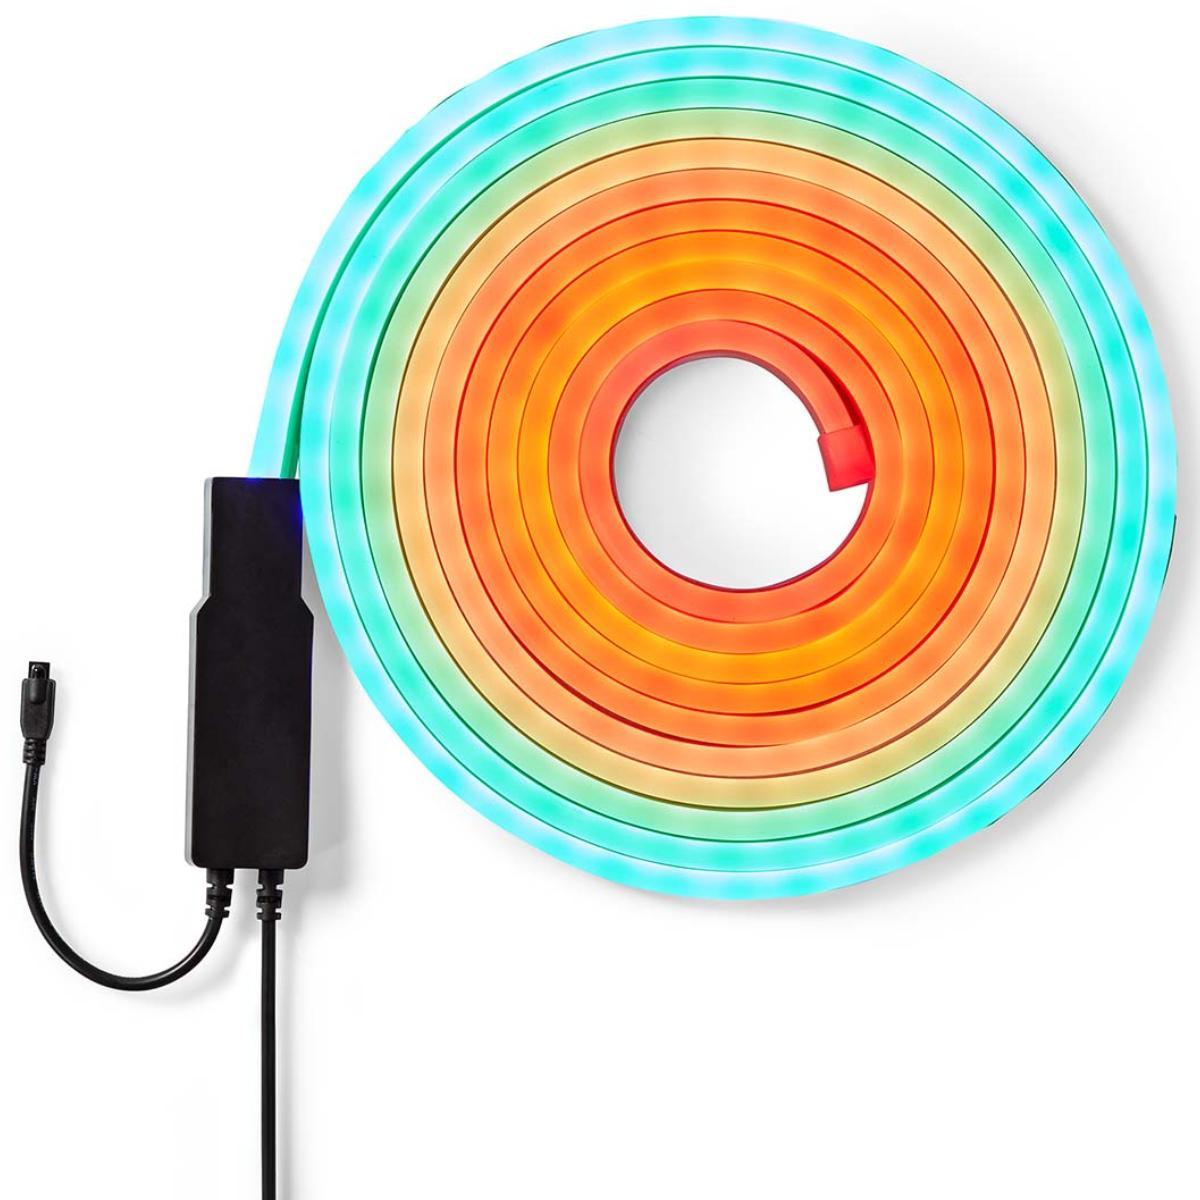 Rallonge ruban LED professionnelle connectable de 5 mètres